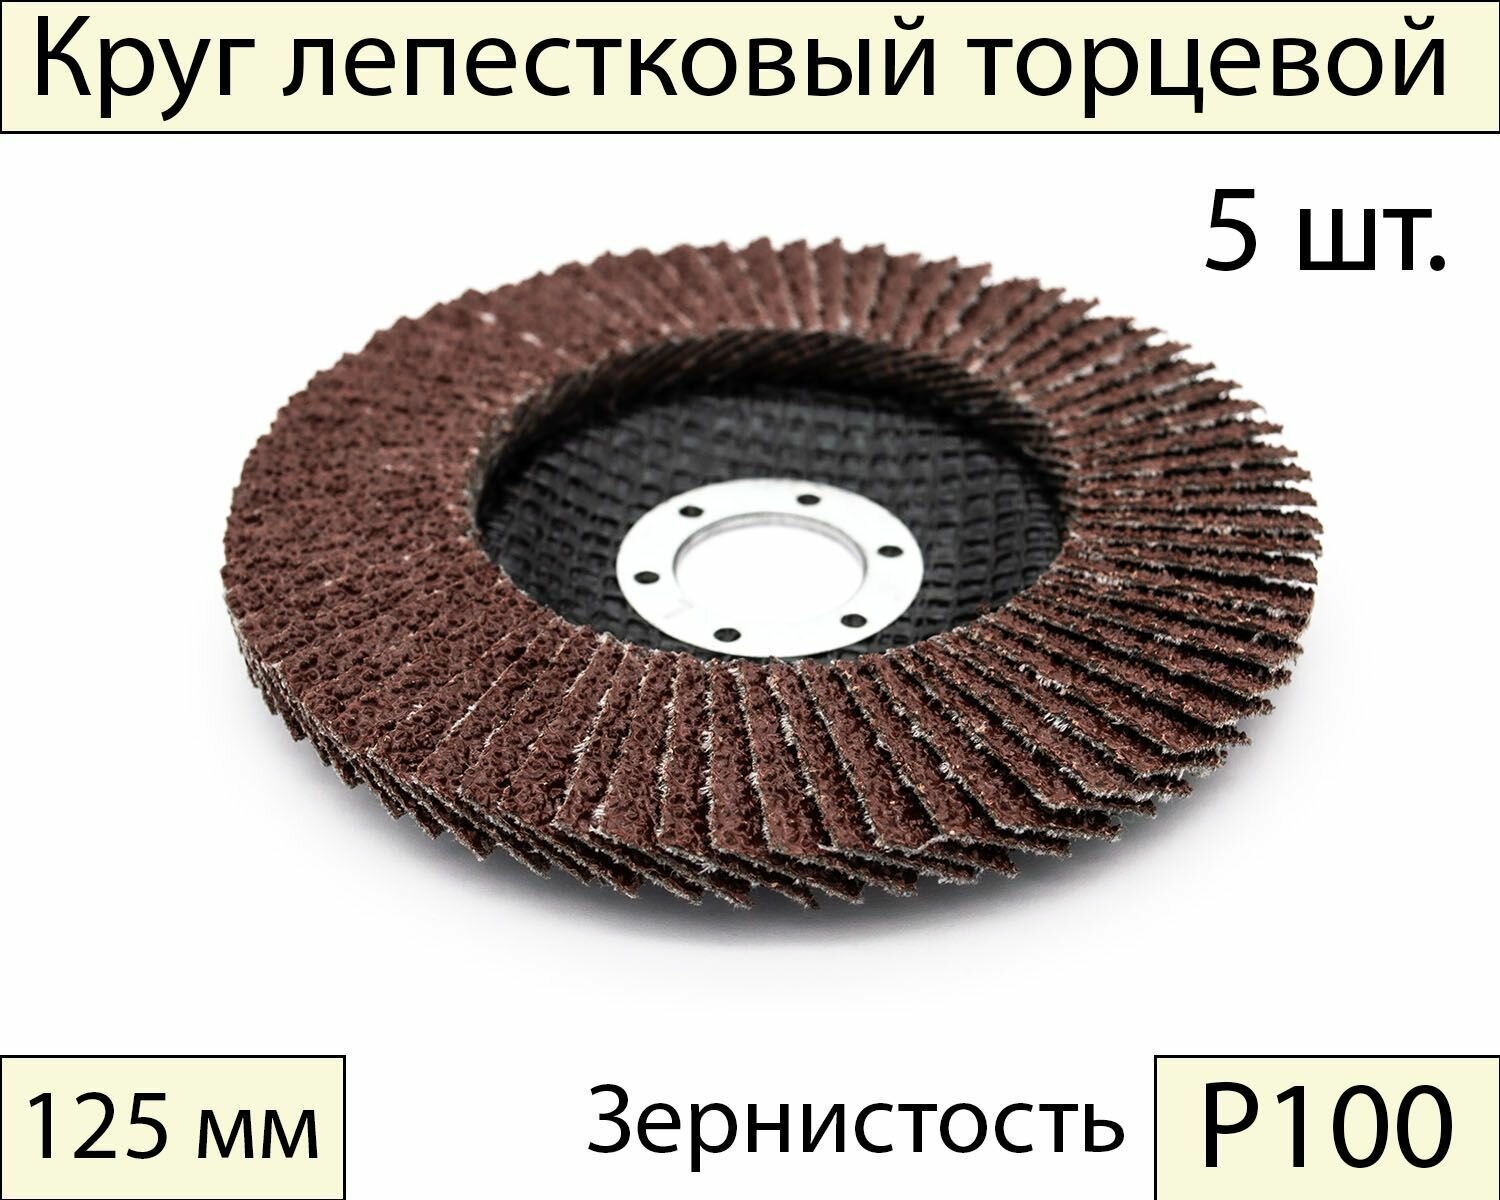 Круги шлифовальные абразивные / лепестковый торцевой диск 125 мм, Р100, 5 шт.